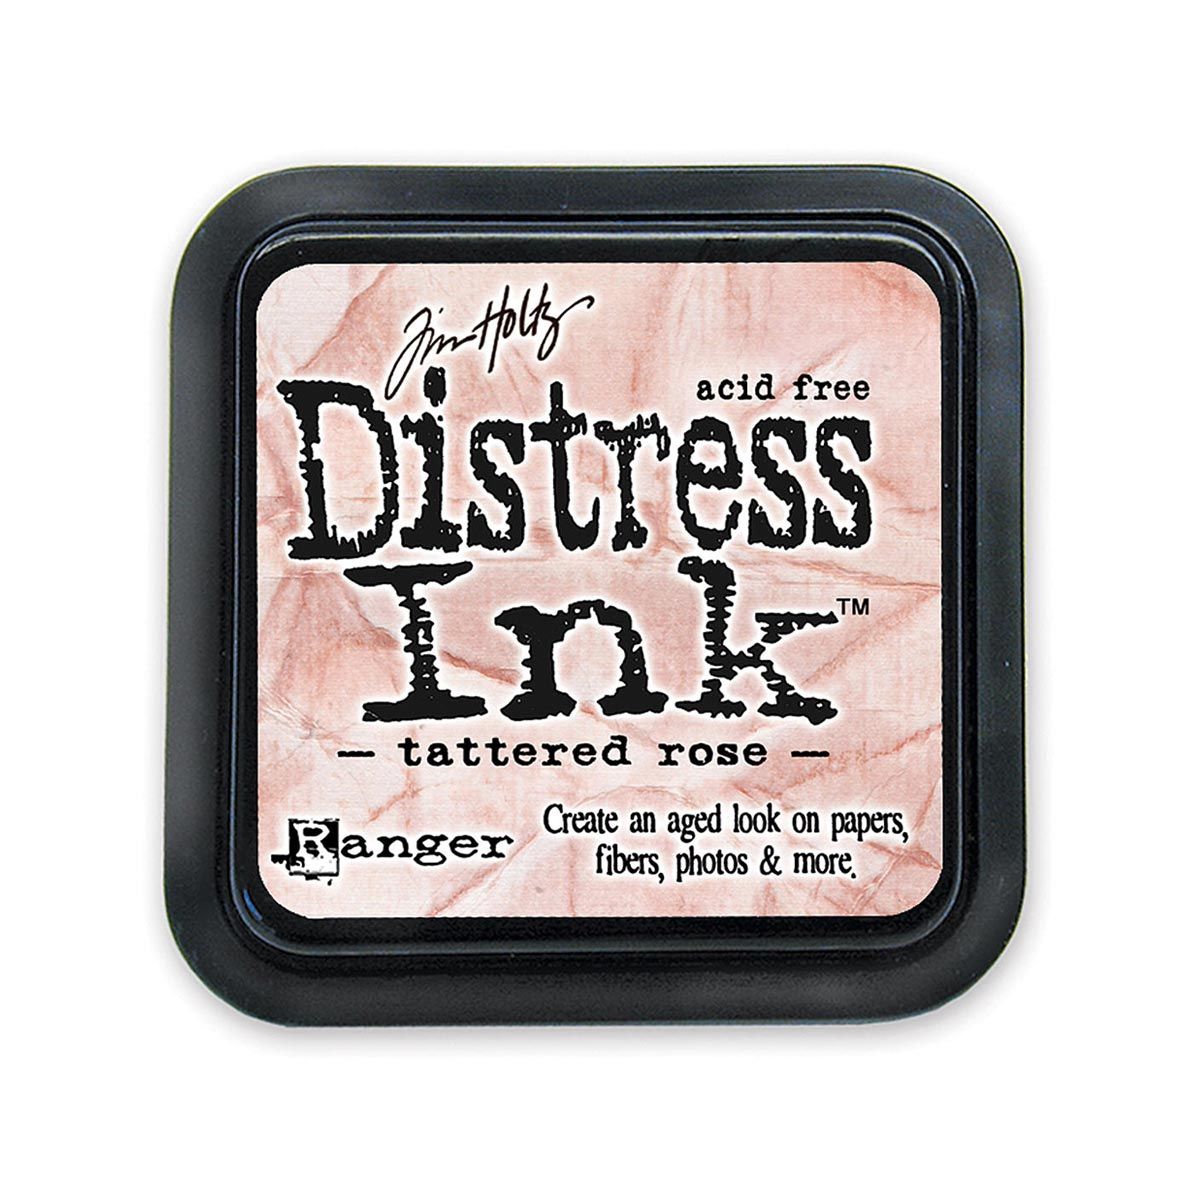 Tim Holtz Mini Distress Ink Pad Tattered Rose 1x1 inch